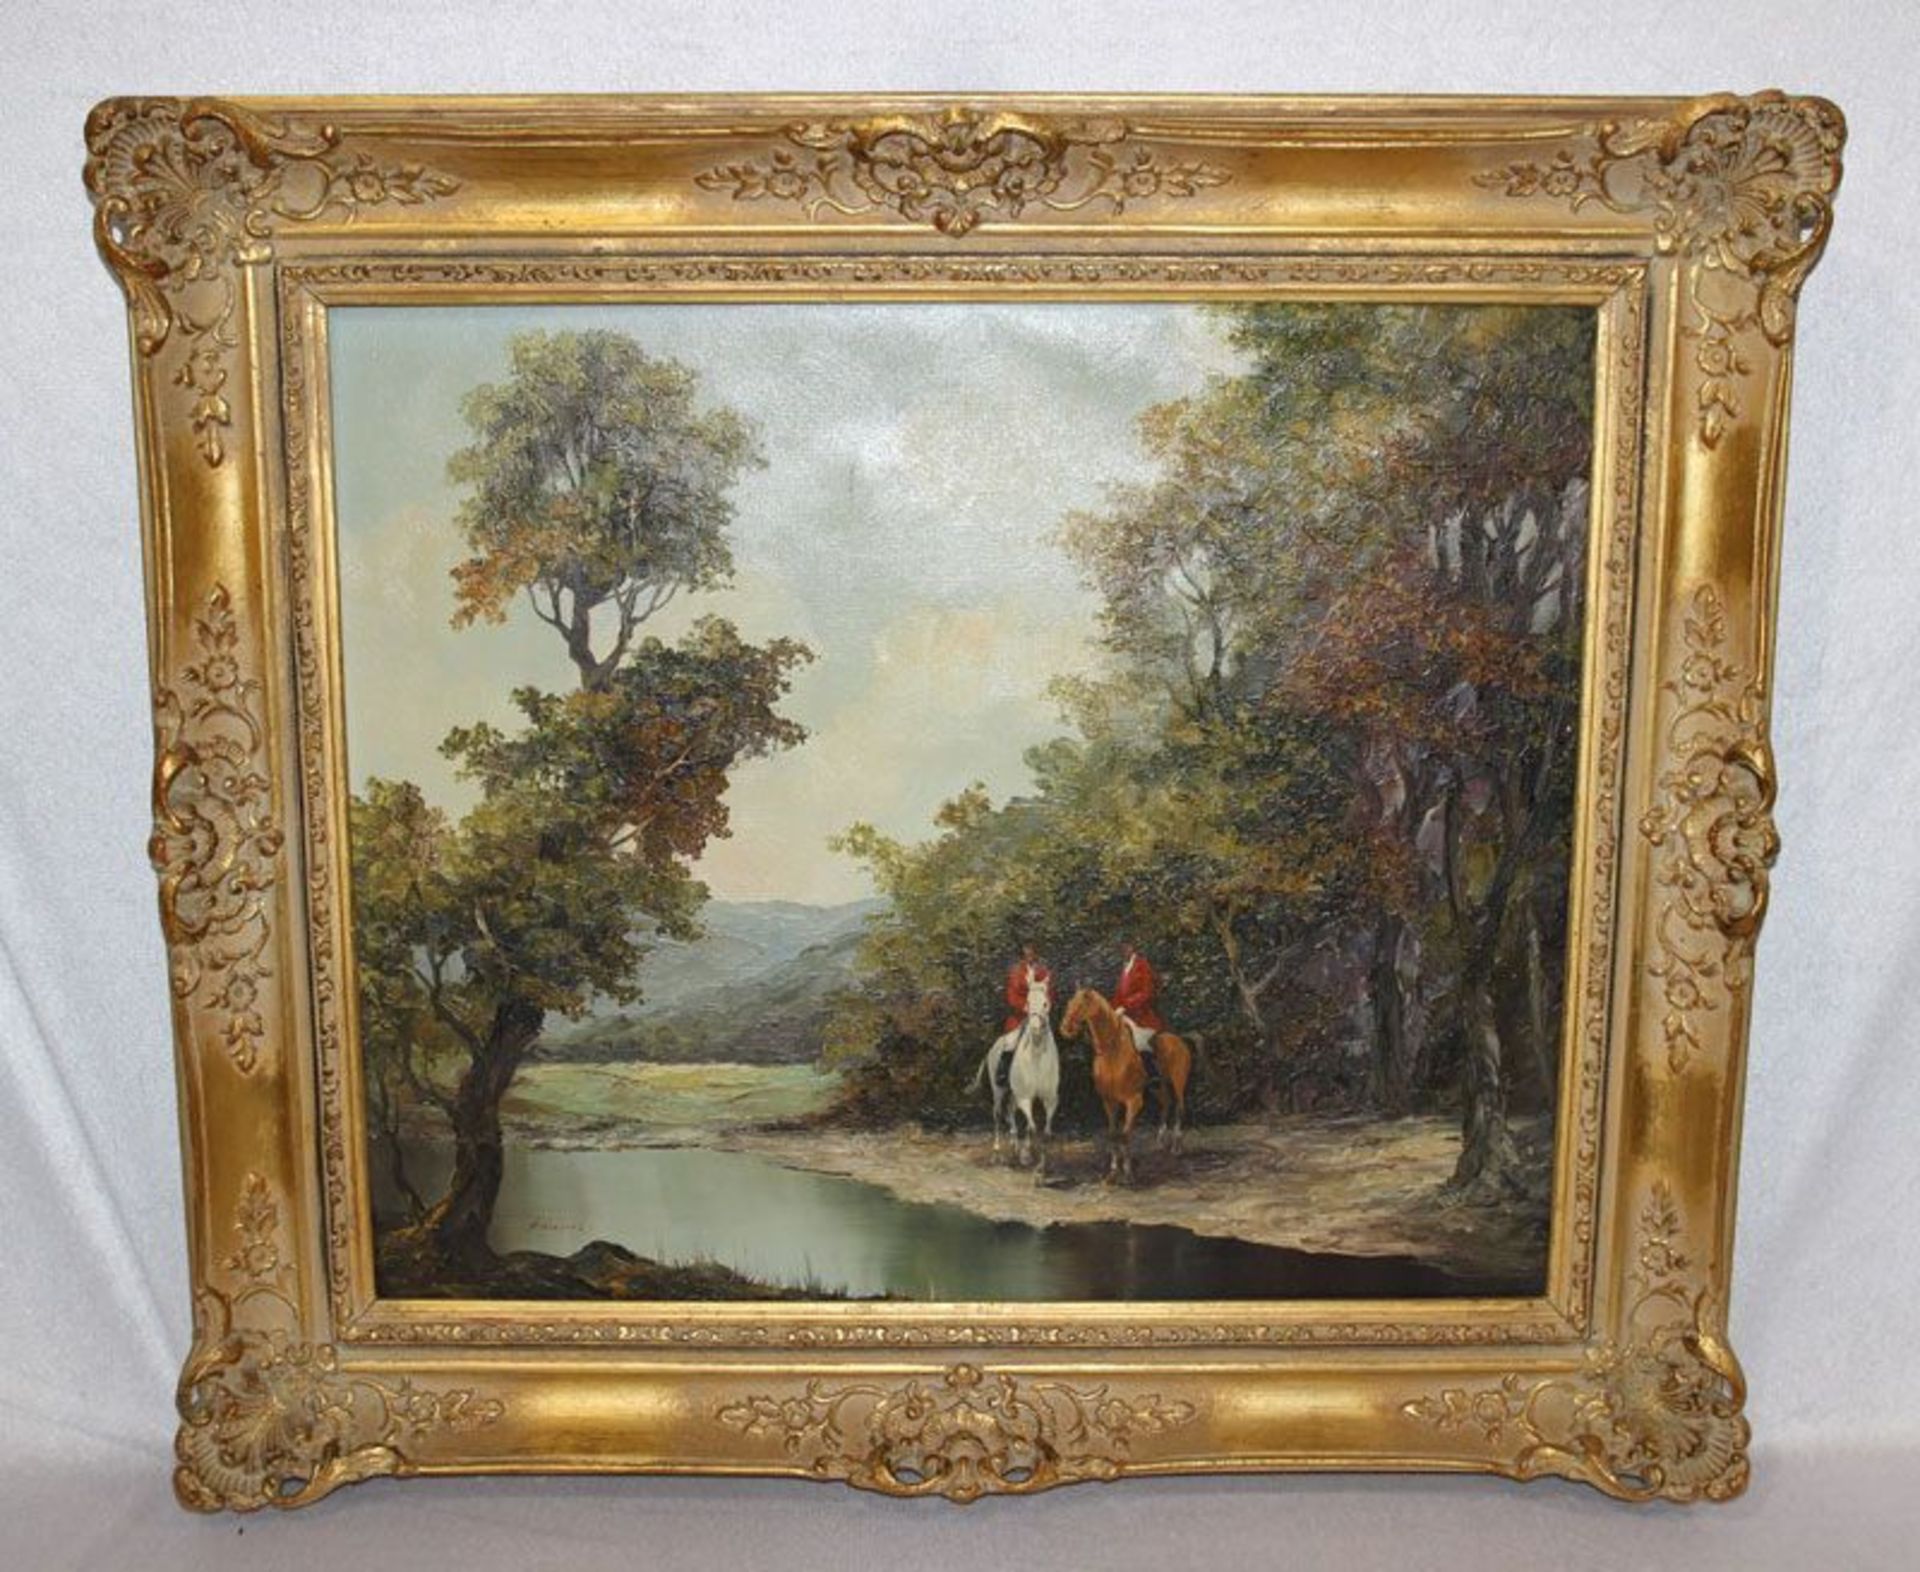 Gemälde ÖL/LW 'Flußlandschaft mit 2 Reitern', signiert Adams, stilvolle Rahmung, LW beschädigt,